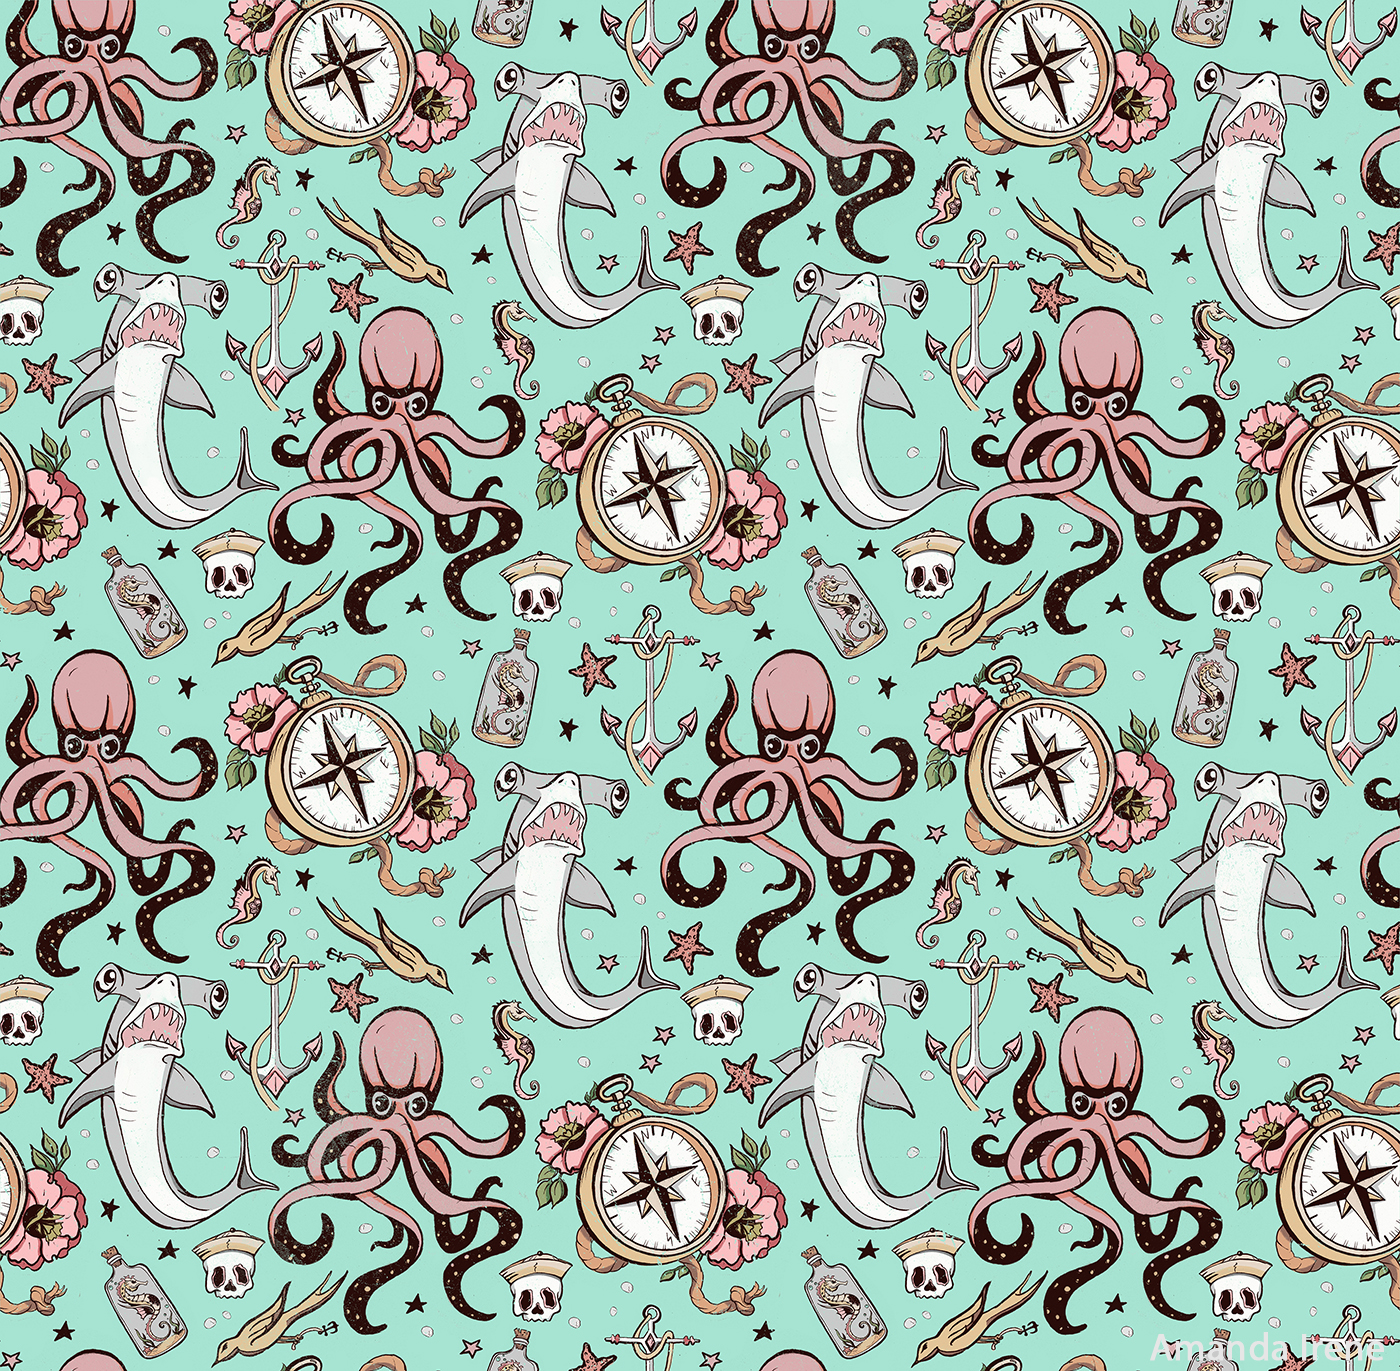 nautical octopus skull Sailor shark water sea tattoo pattern textile